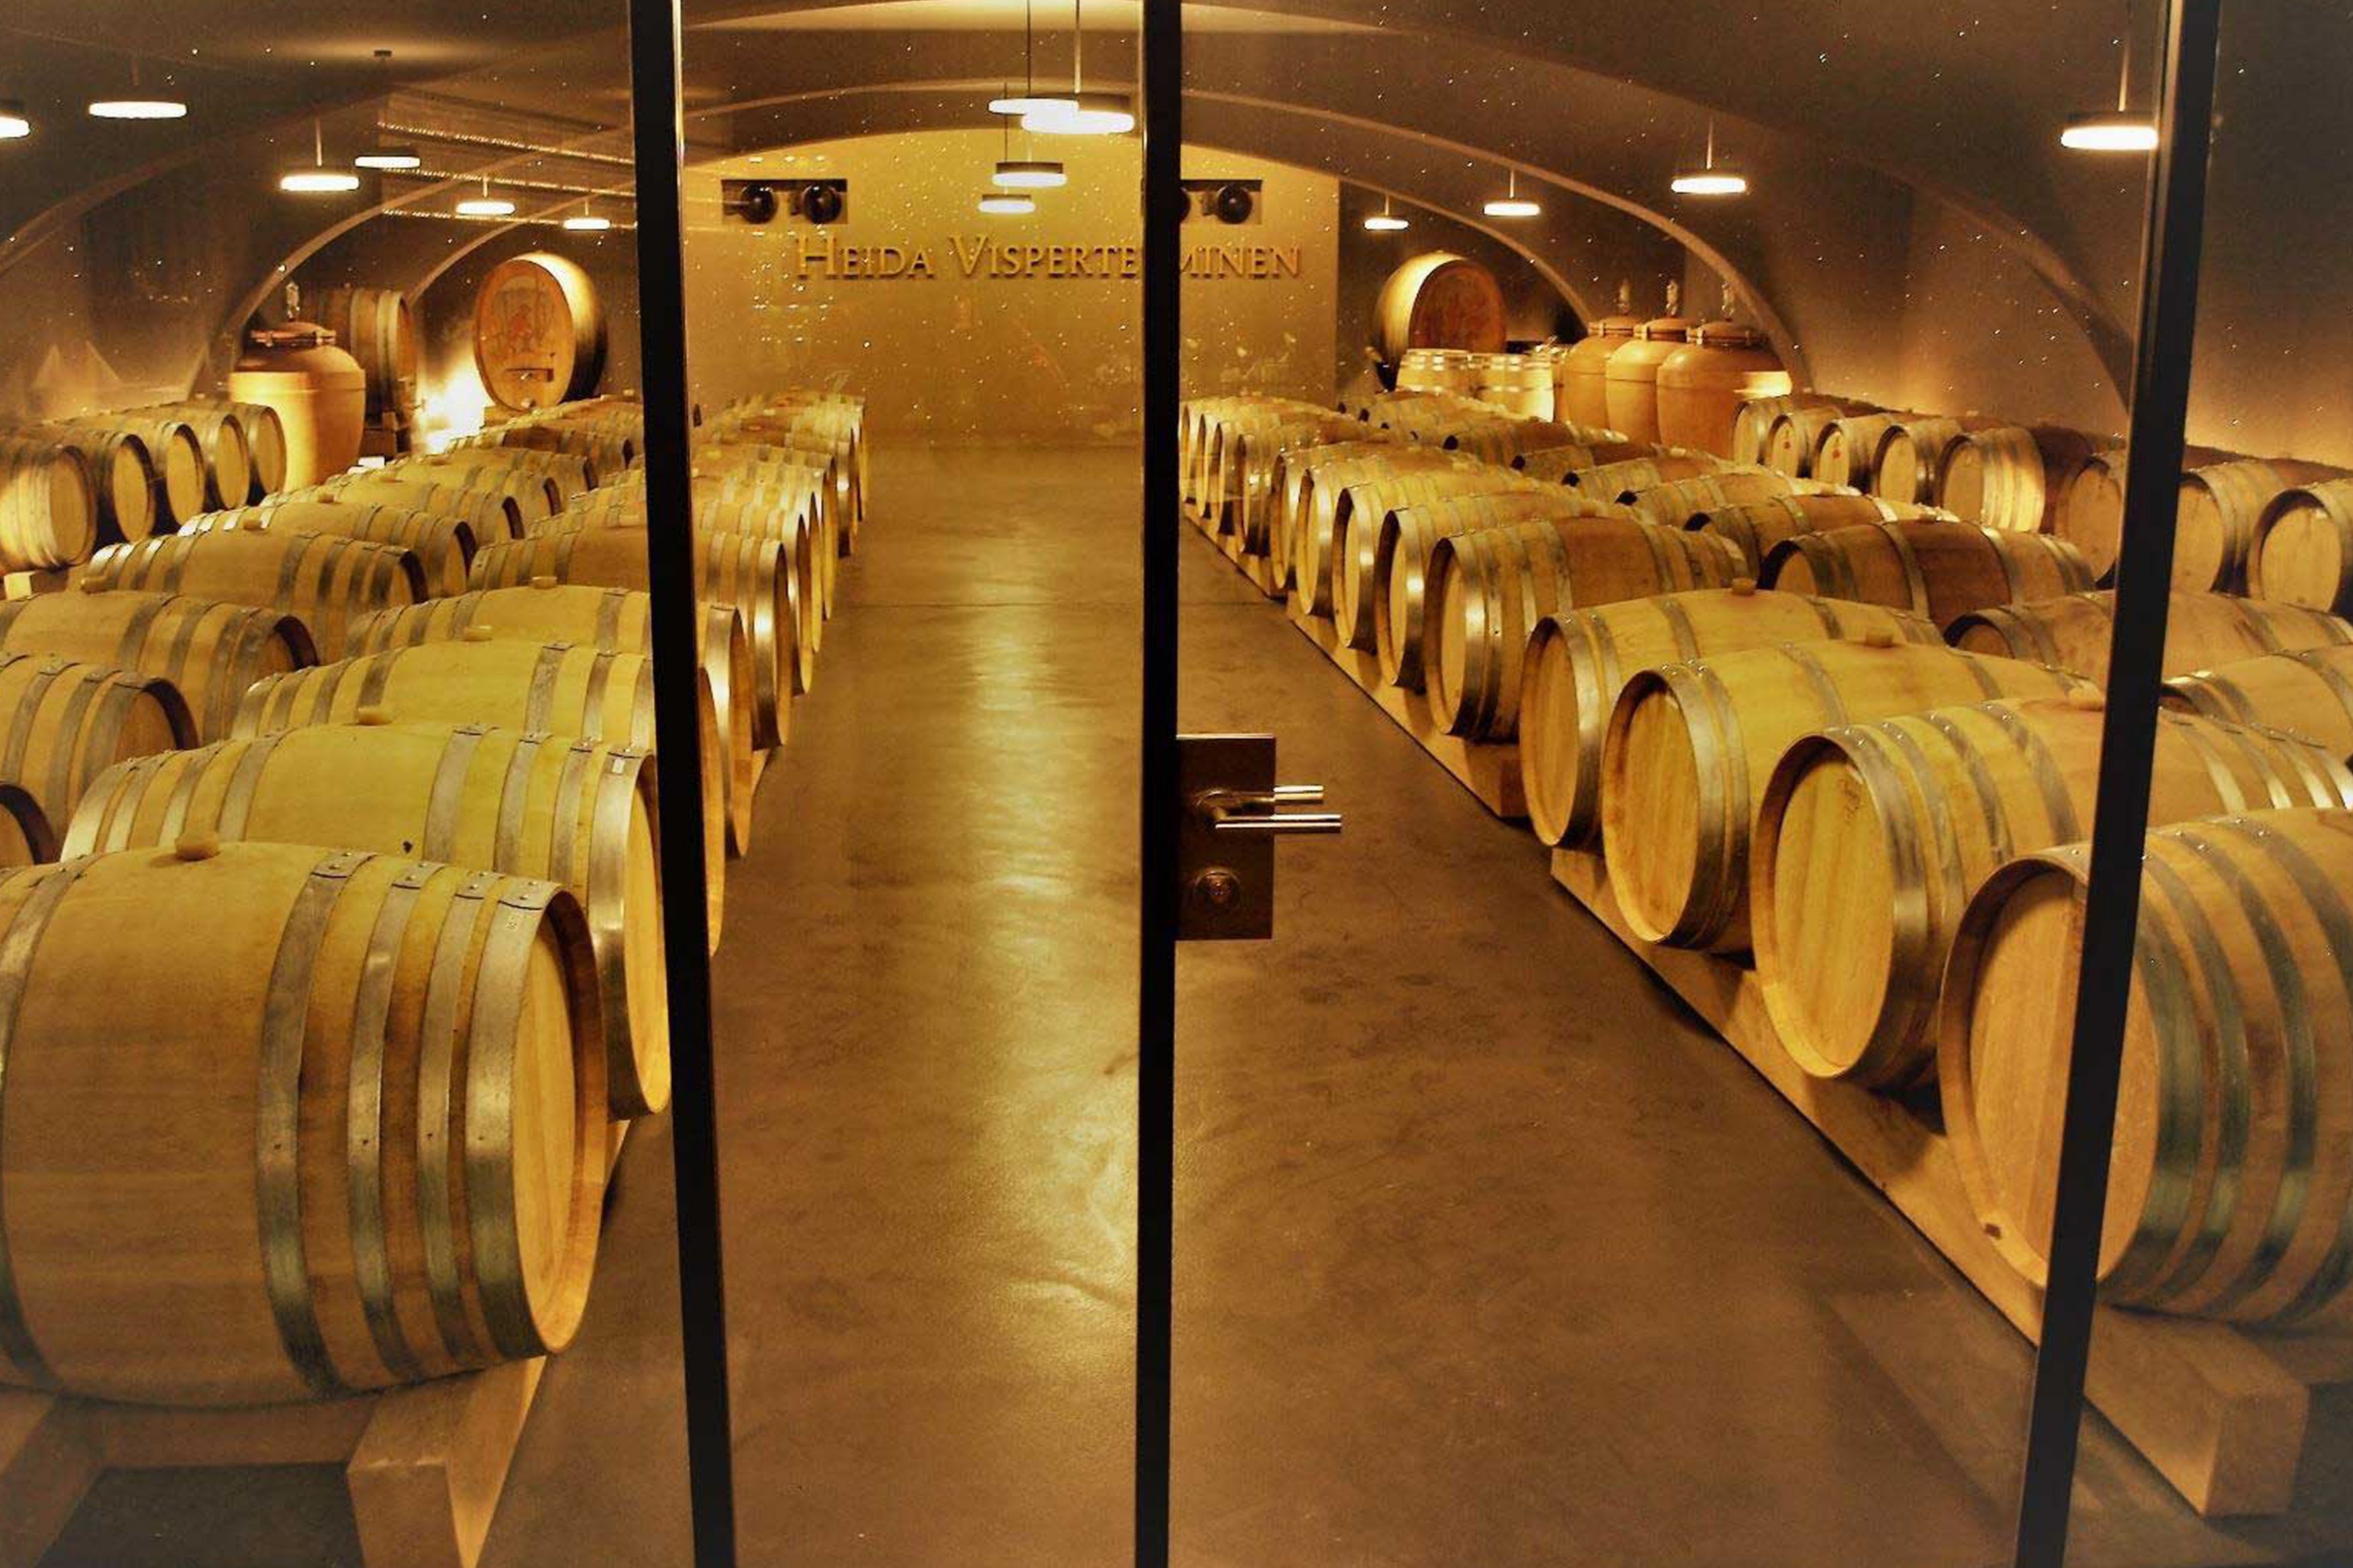 Bodenbelagssysteme und Wandbeläge in Weinkellerei